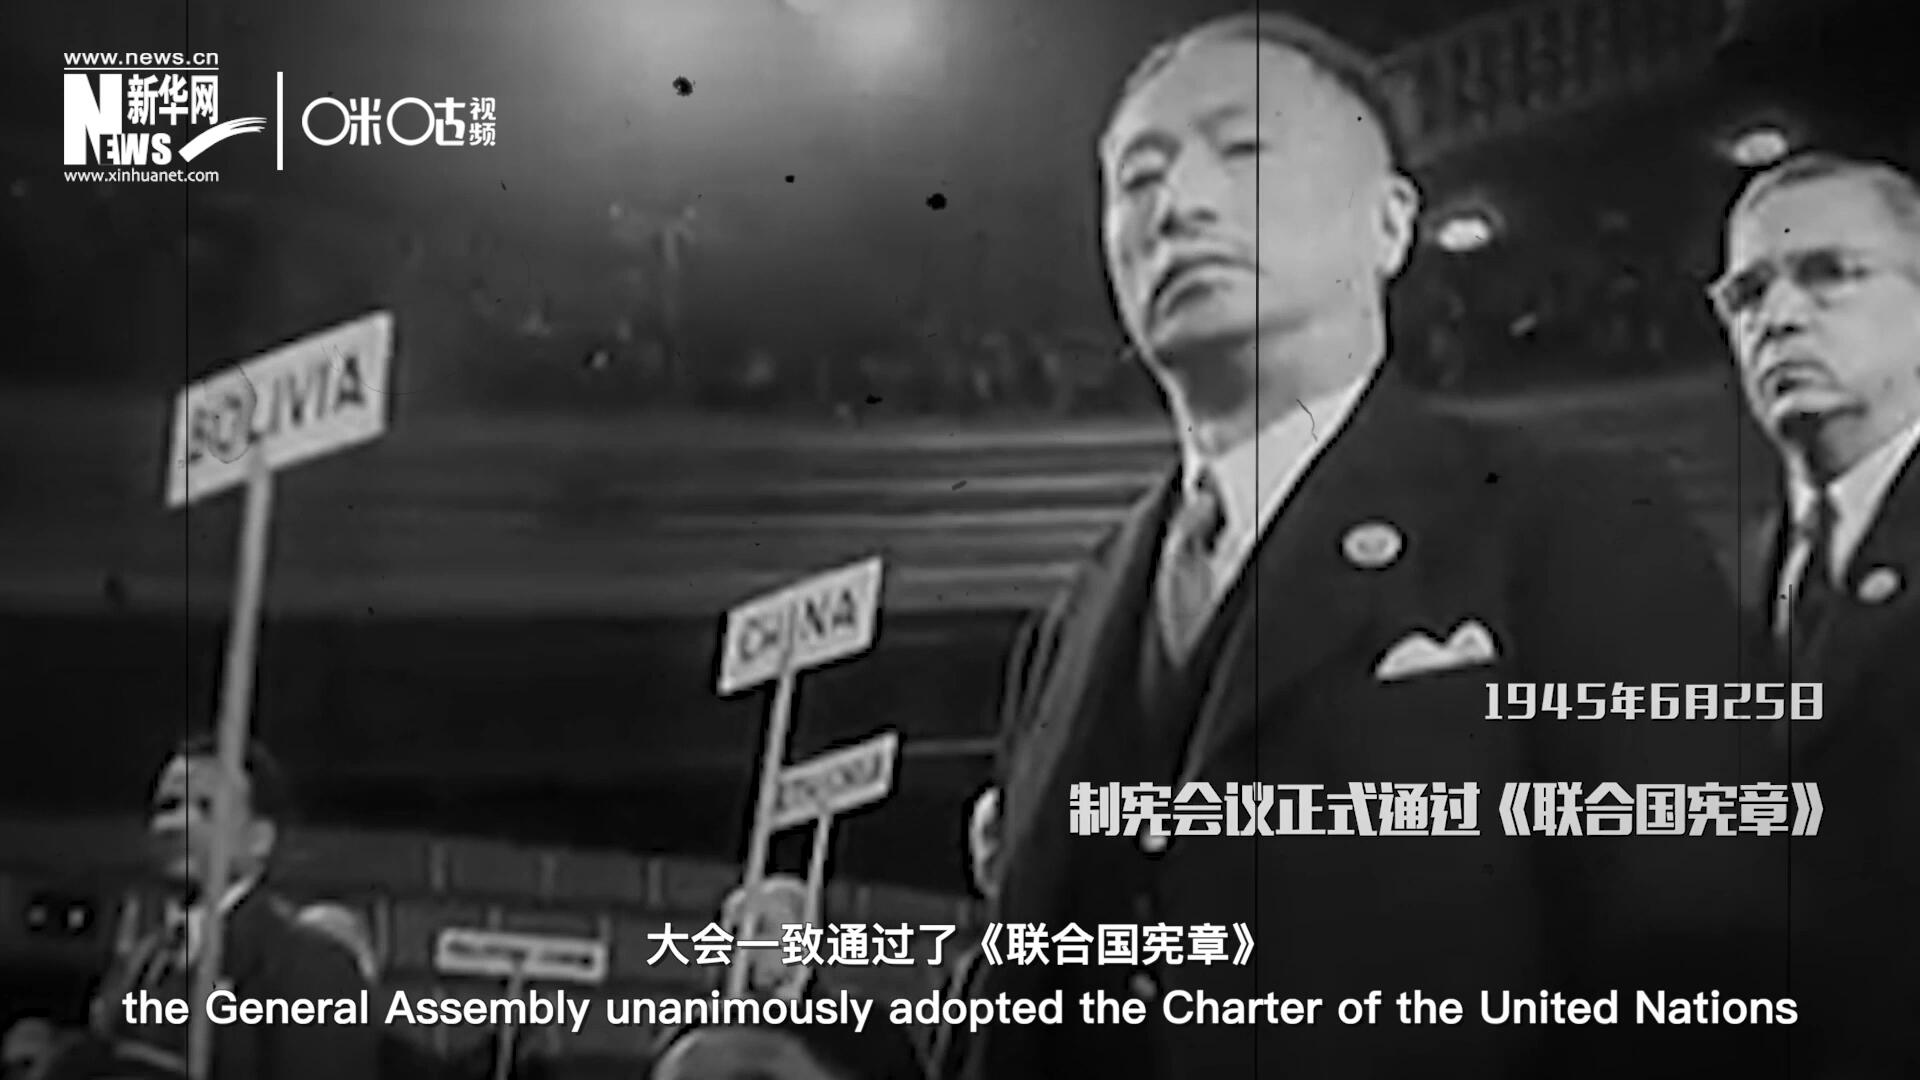 经过两个月激烈讨论和逐项投票，1945年6月25日，大会一致通过了《联合国宪章》